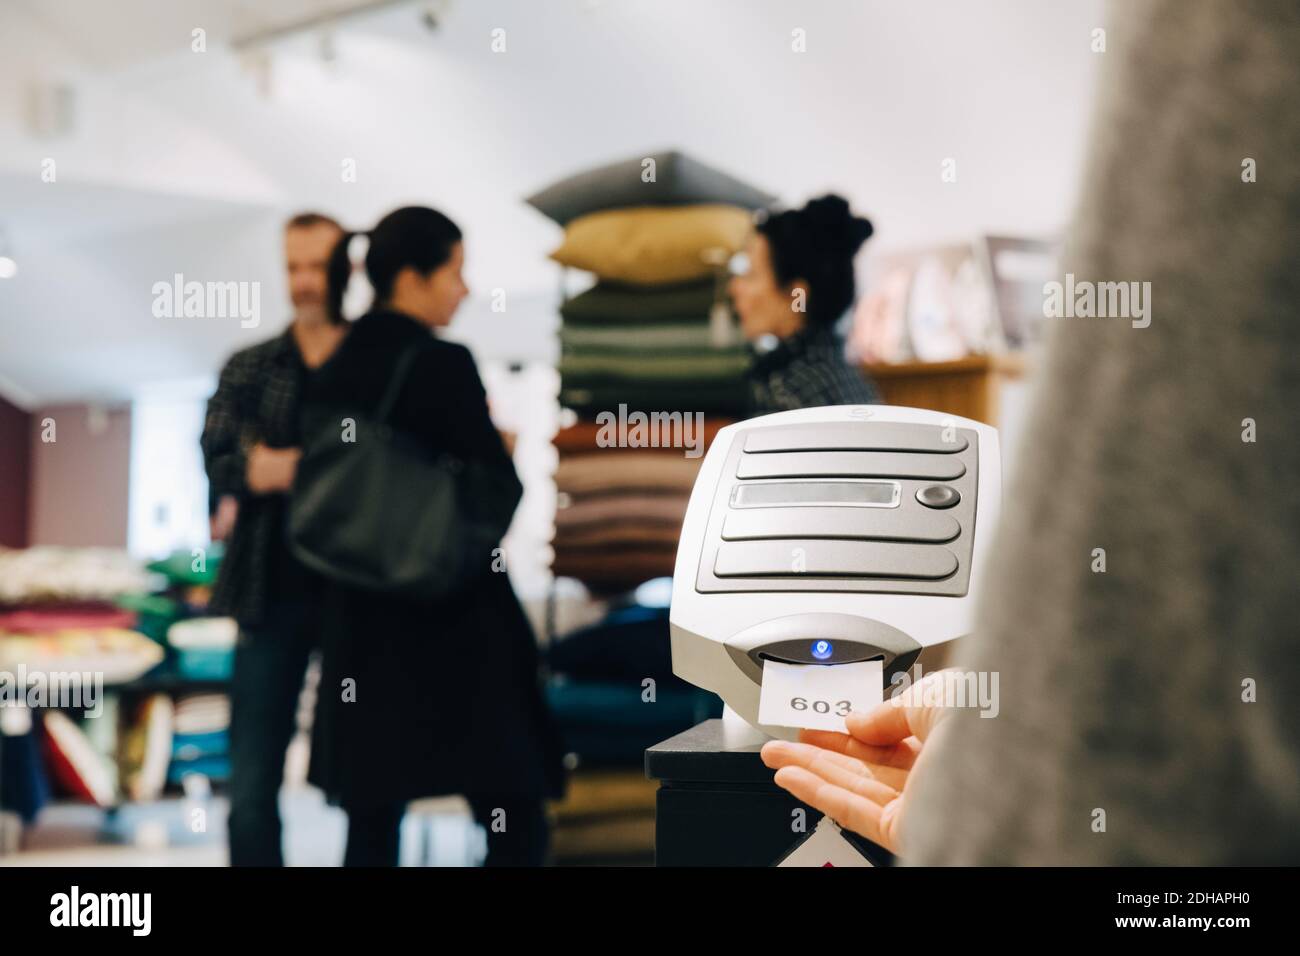 Frau hält Papier von der Maschine, während die Leute im Hintergrund diskutieren Stockfoto